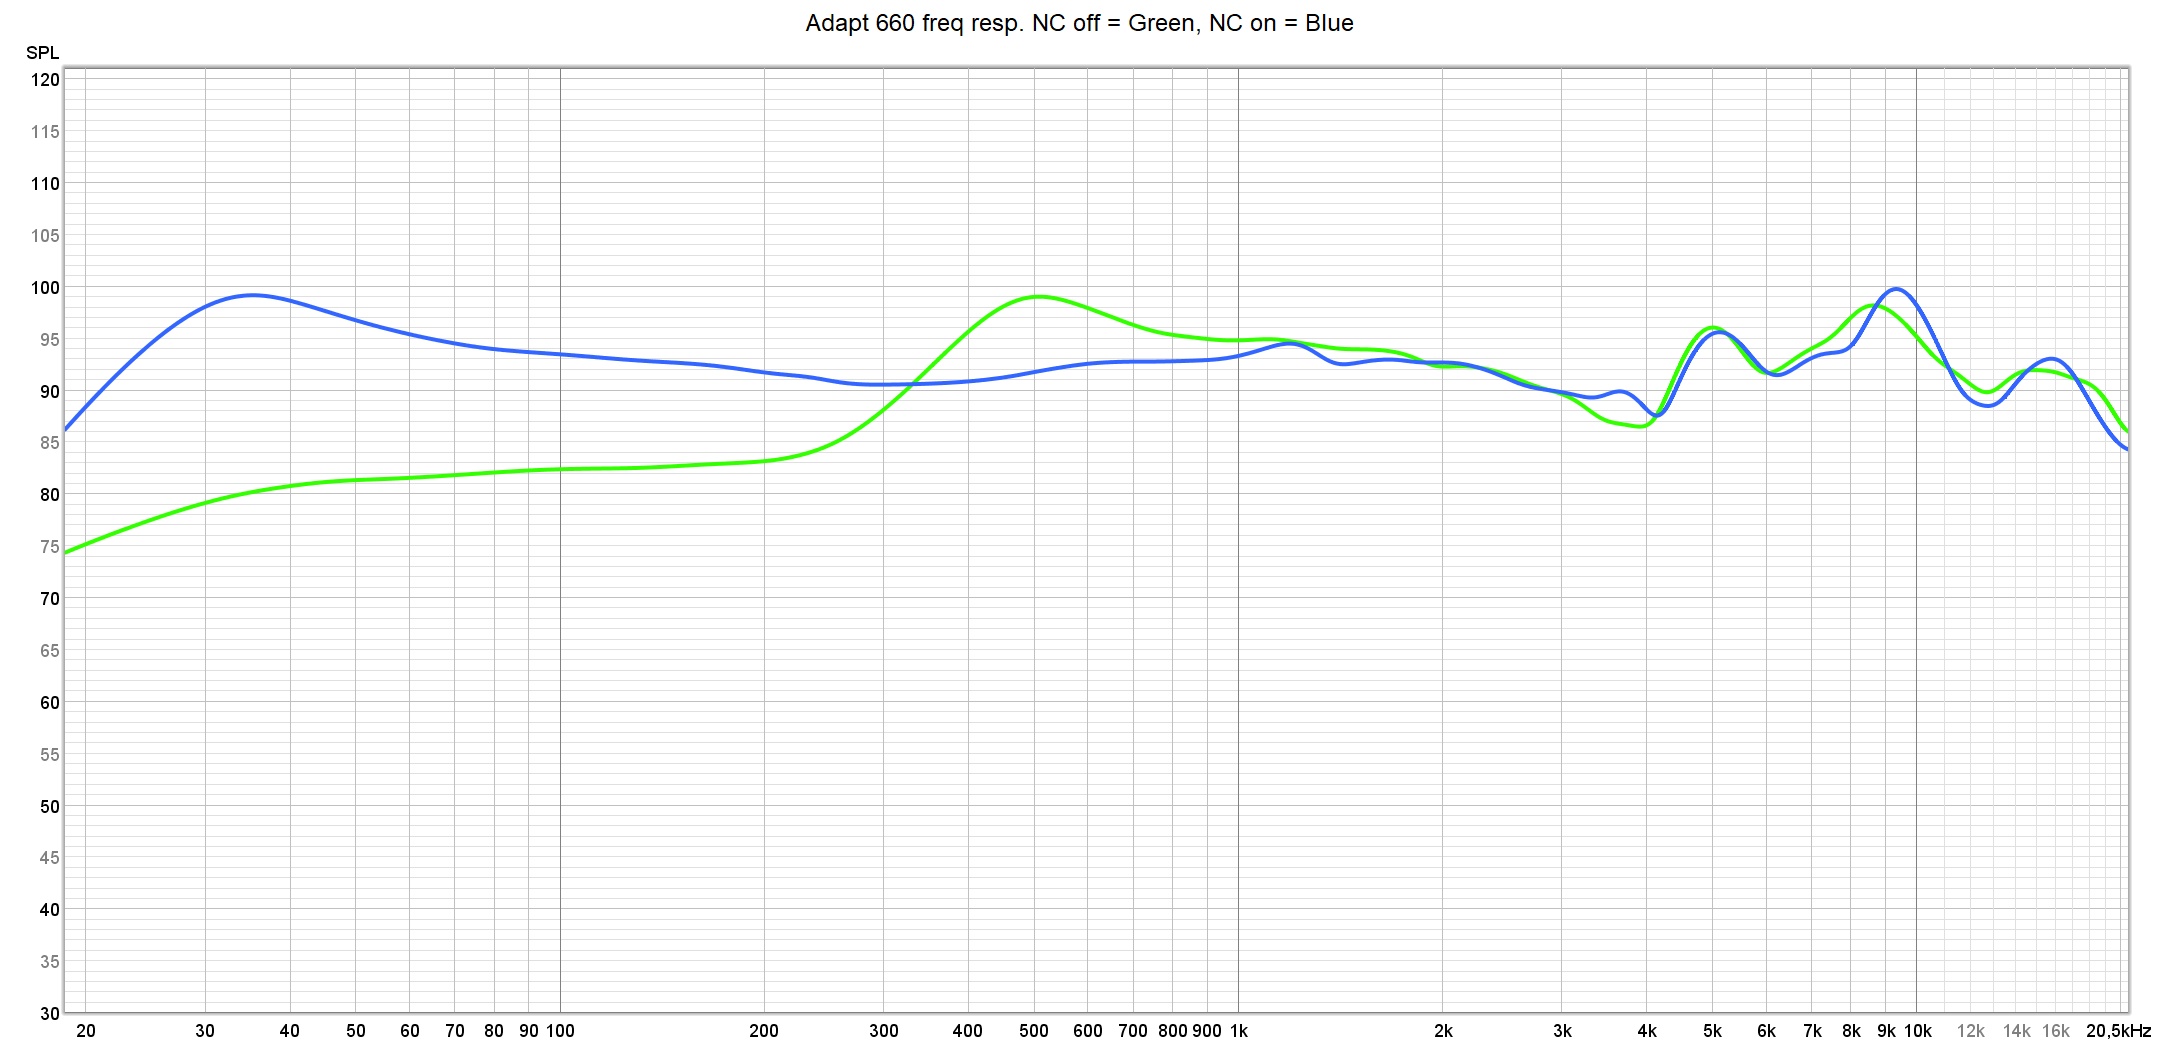 Adapt 660 freq resp. NC off vs on